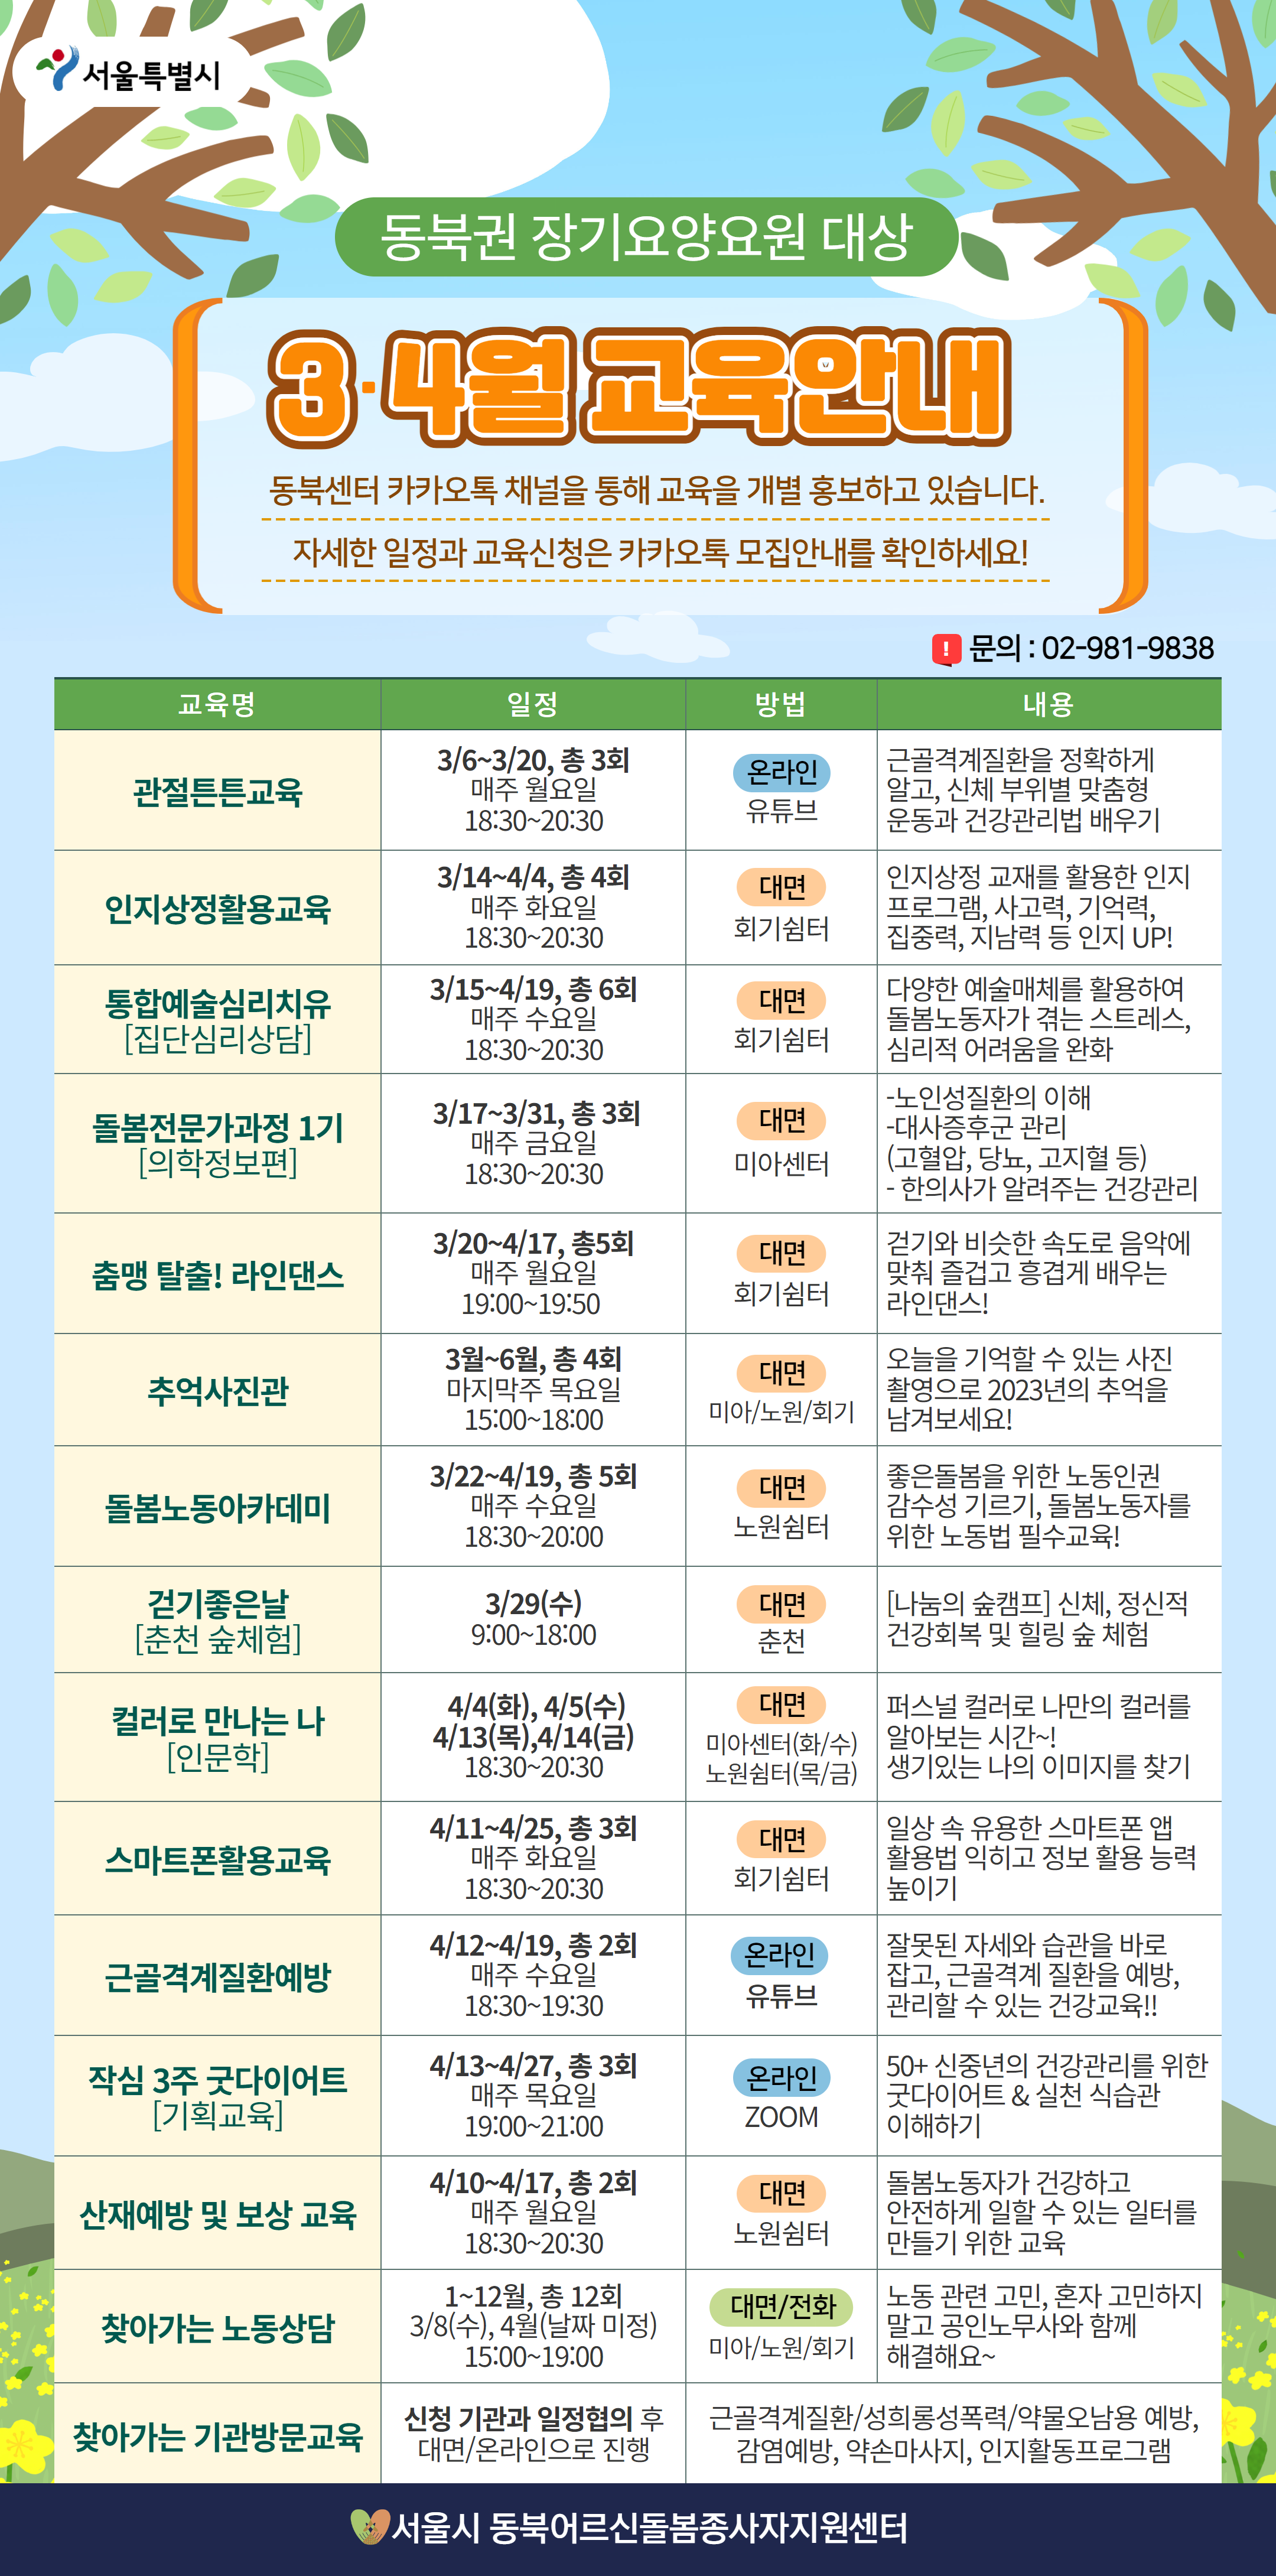 서울시 동북어르신돌봄종사자지원센터 3~4월 교육프로그램 안내 이미지 1 - 본문에 자세한설명을 제공합니다.